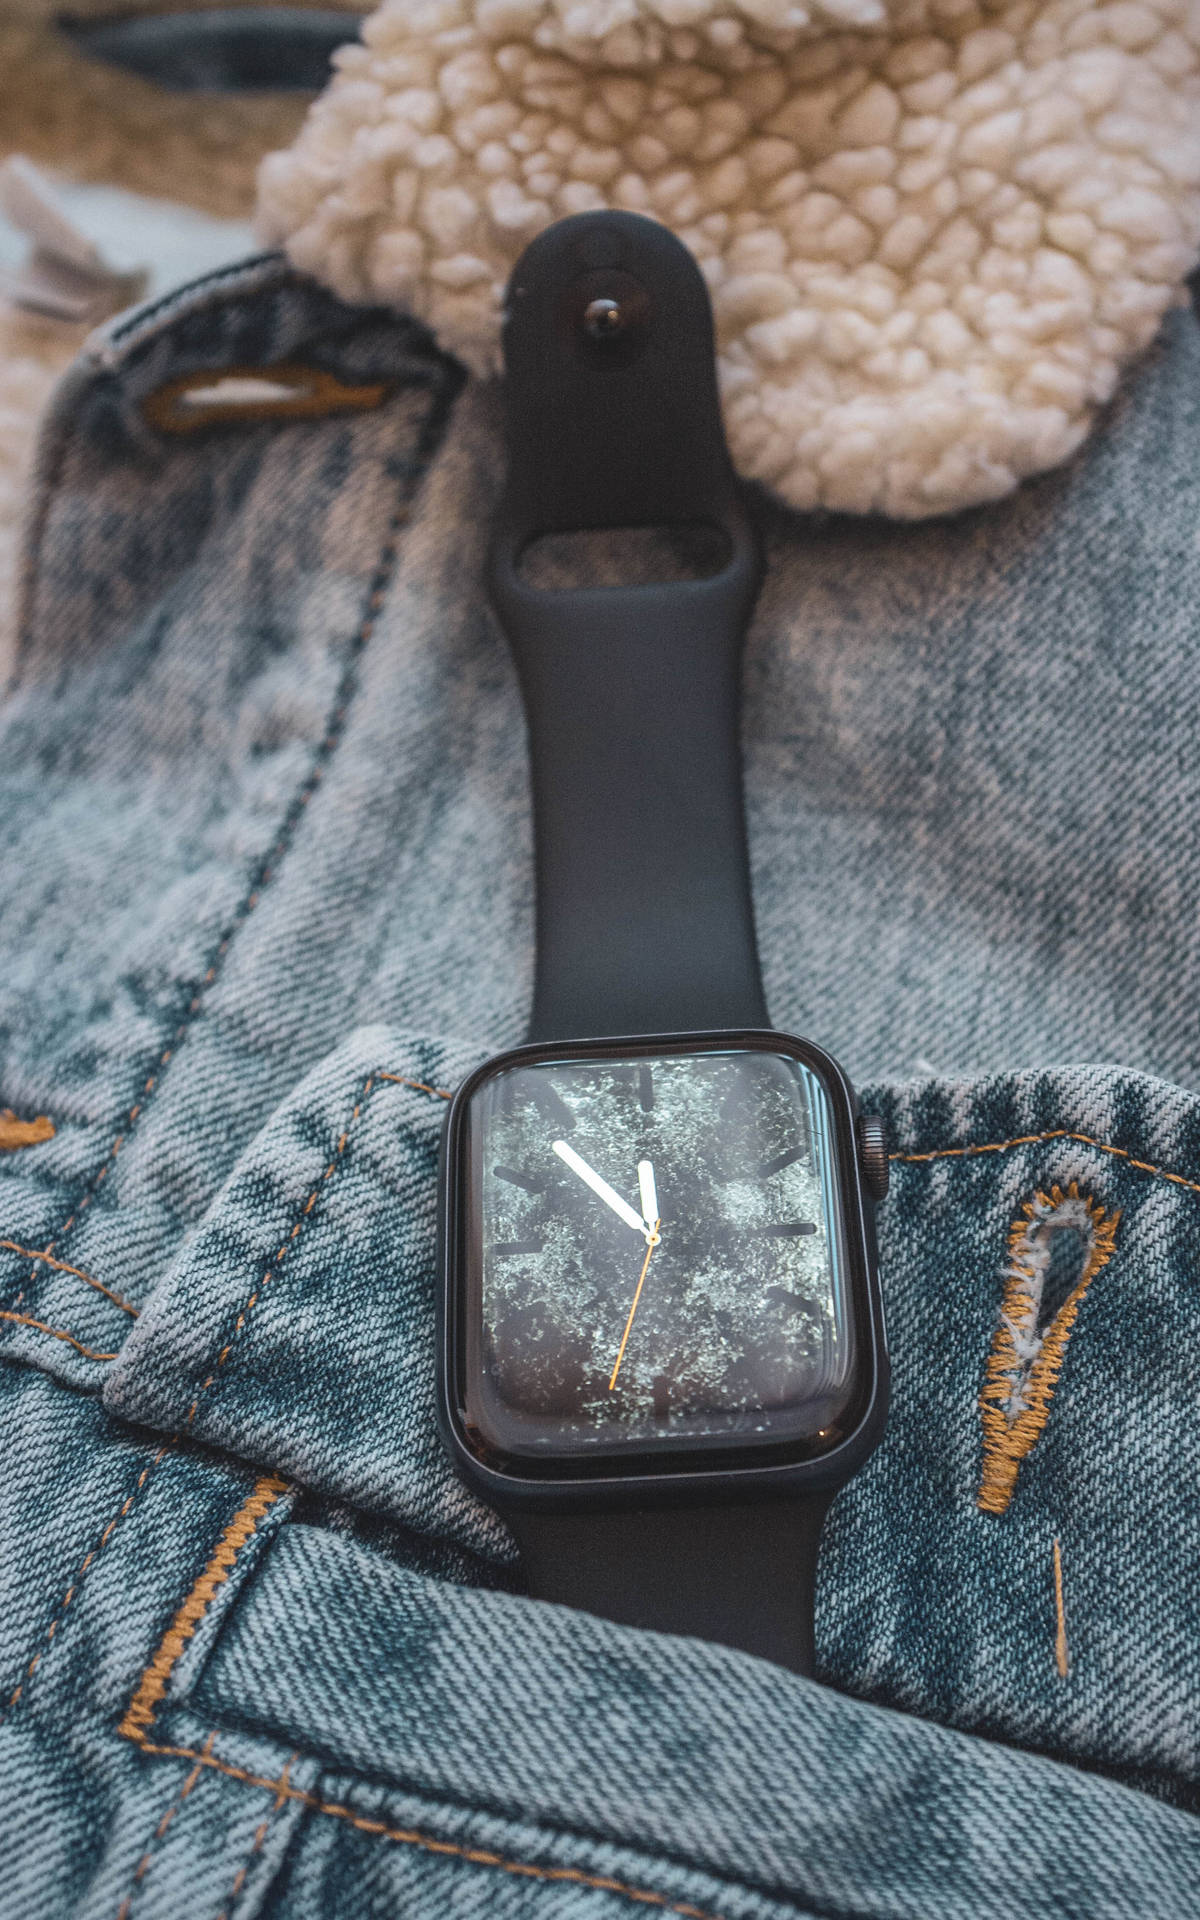 Apple Smartwatch On Denim Jacket Background